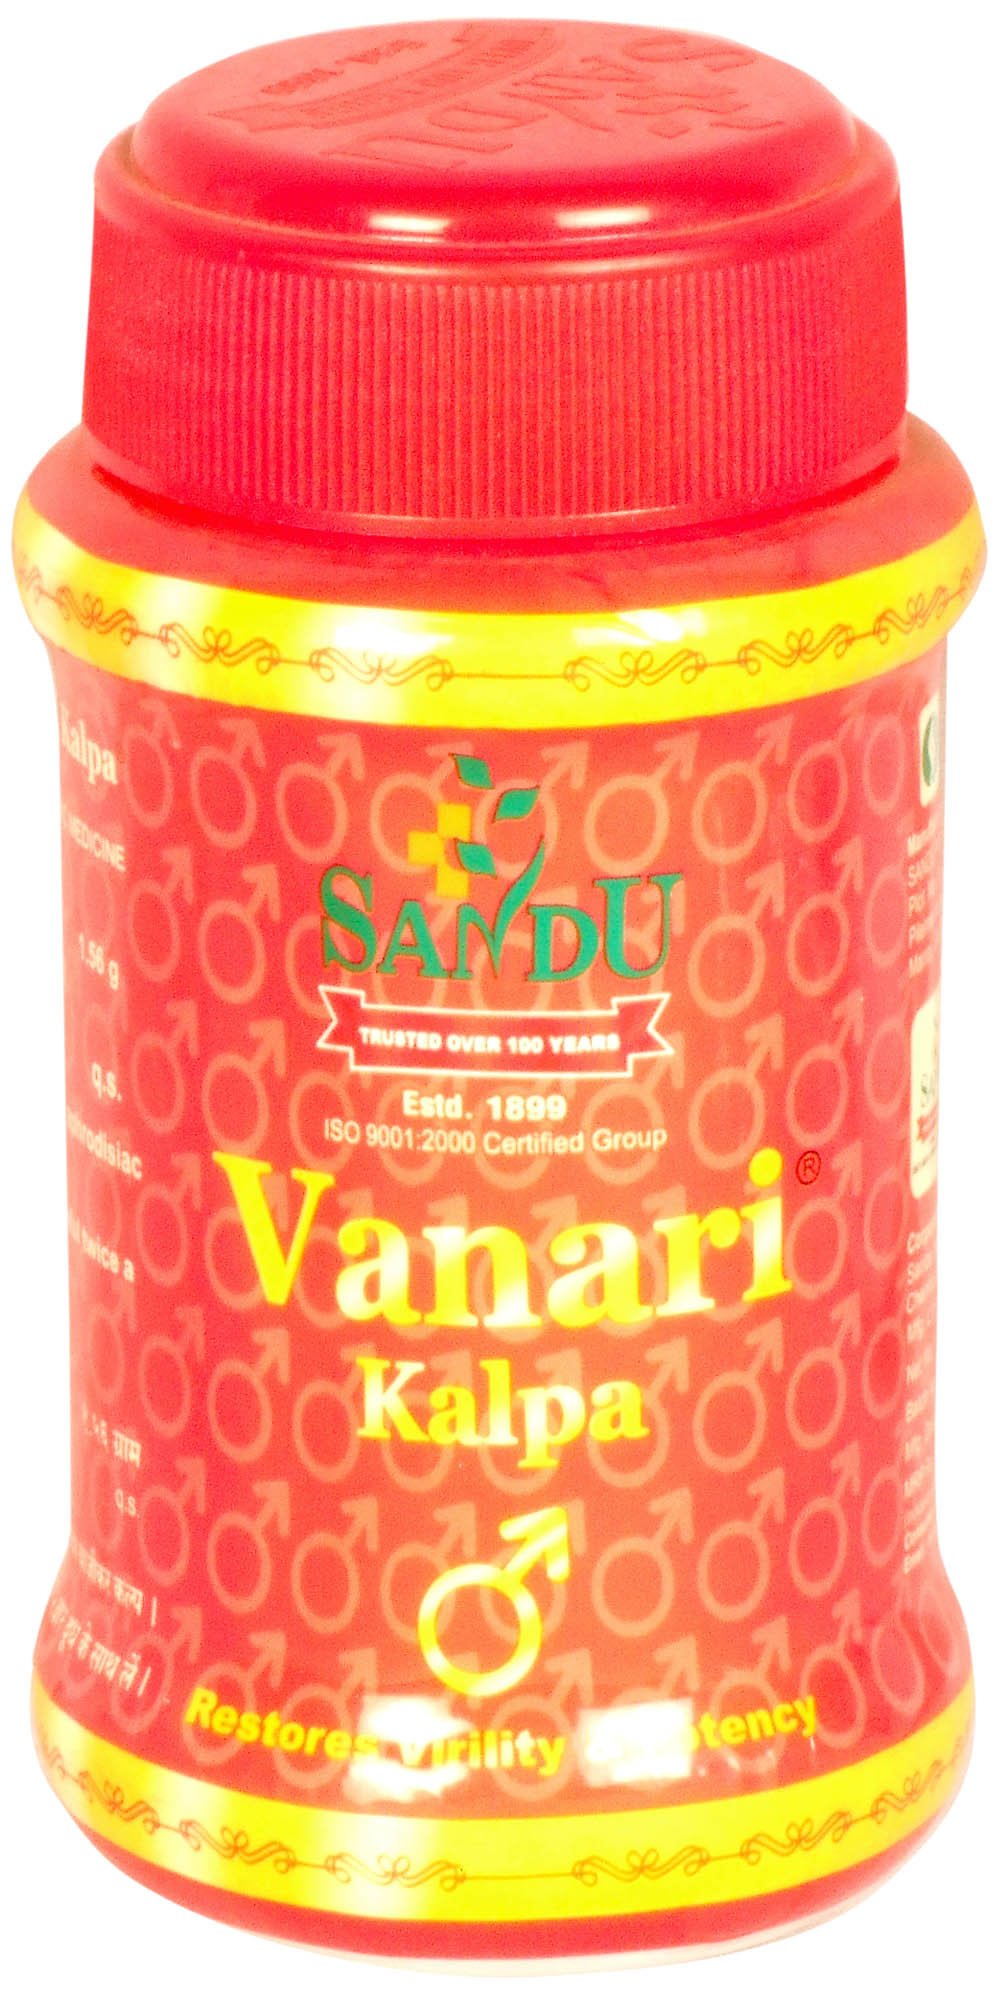 Vanari Kalpa Restores Virility & Potency - book cover